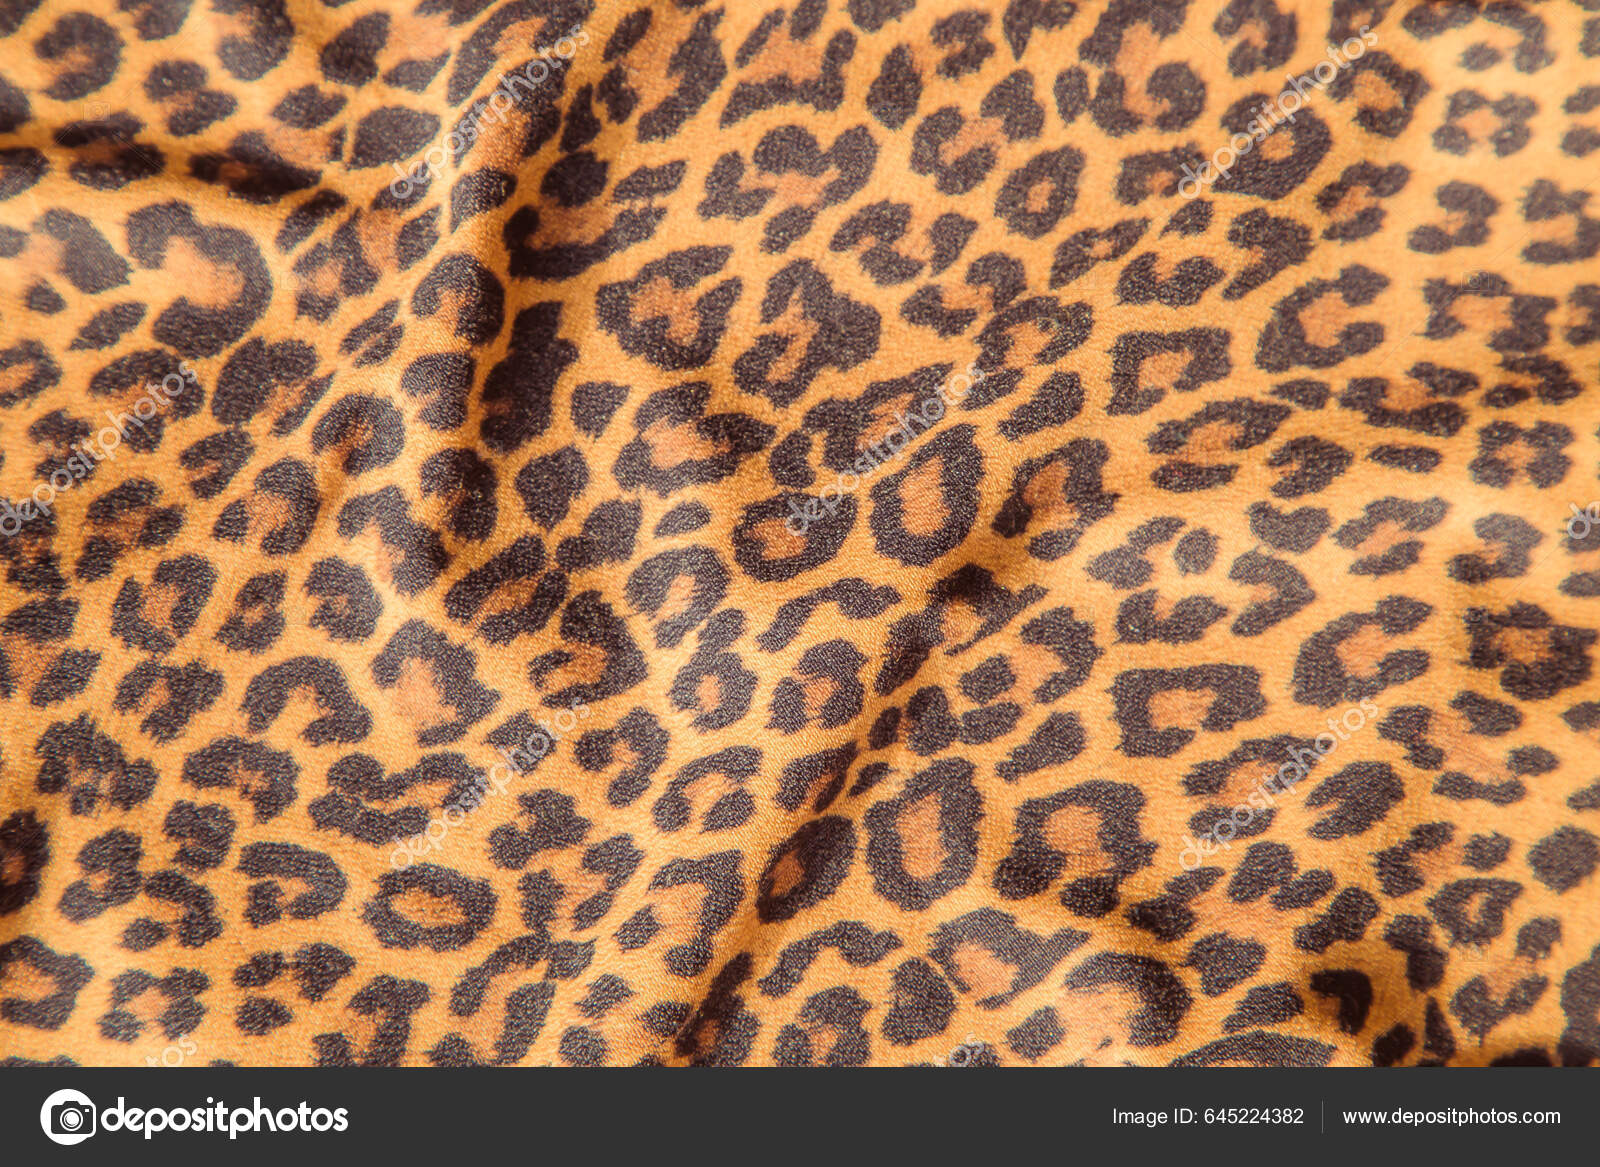 Dettagli pelliccia di tigre Foto Stock, Dettagli pelliccia di tigre  Immagini | Depositphotos